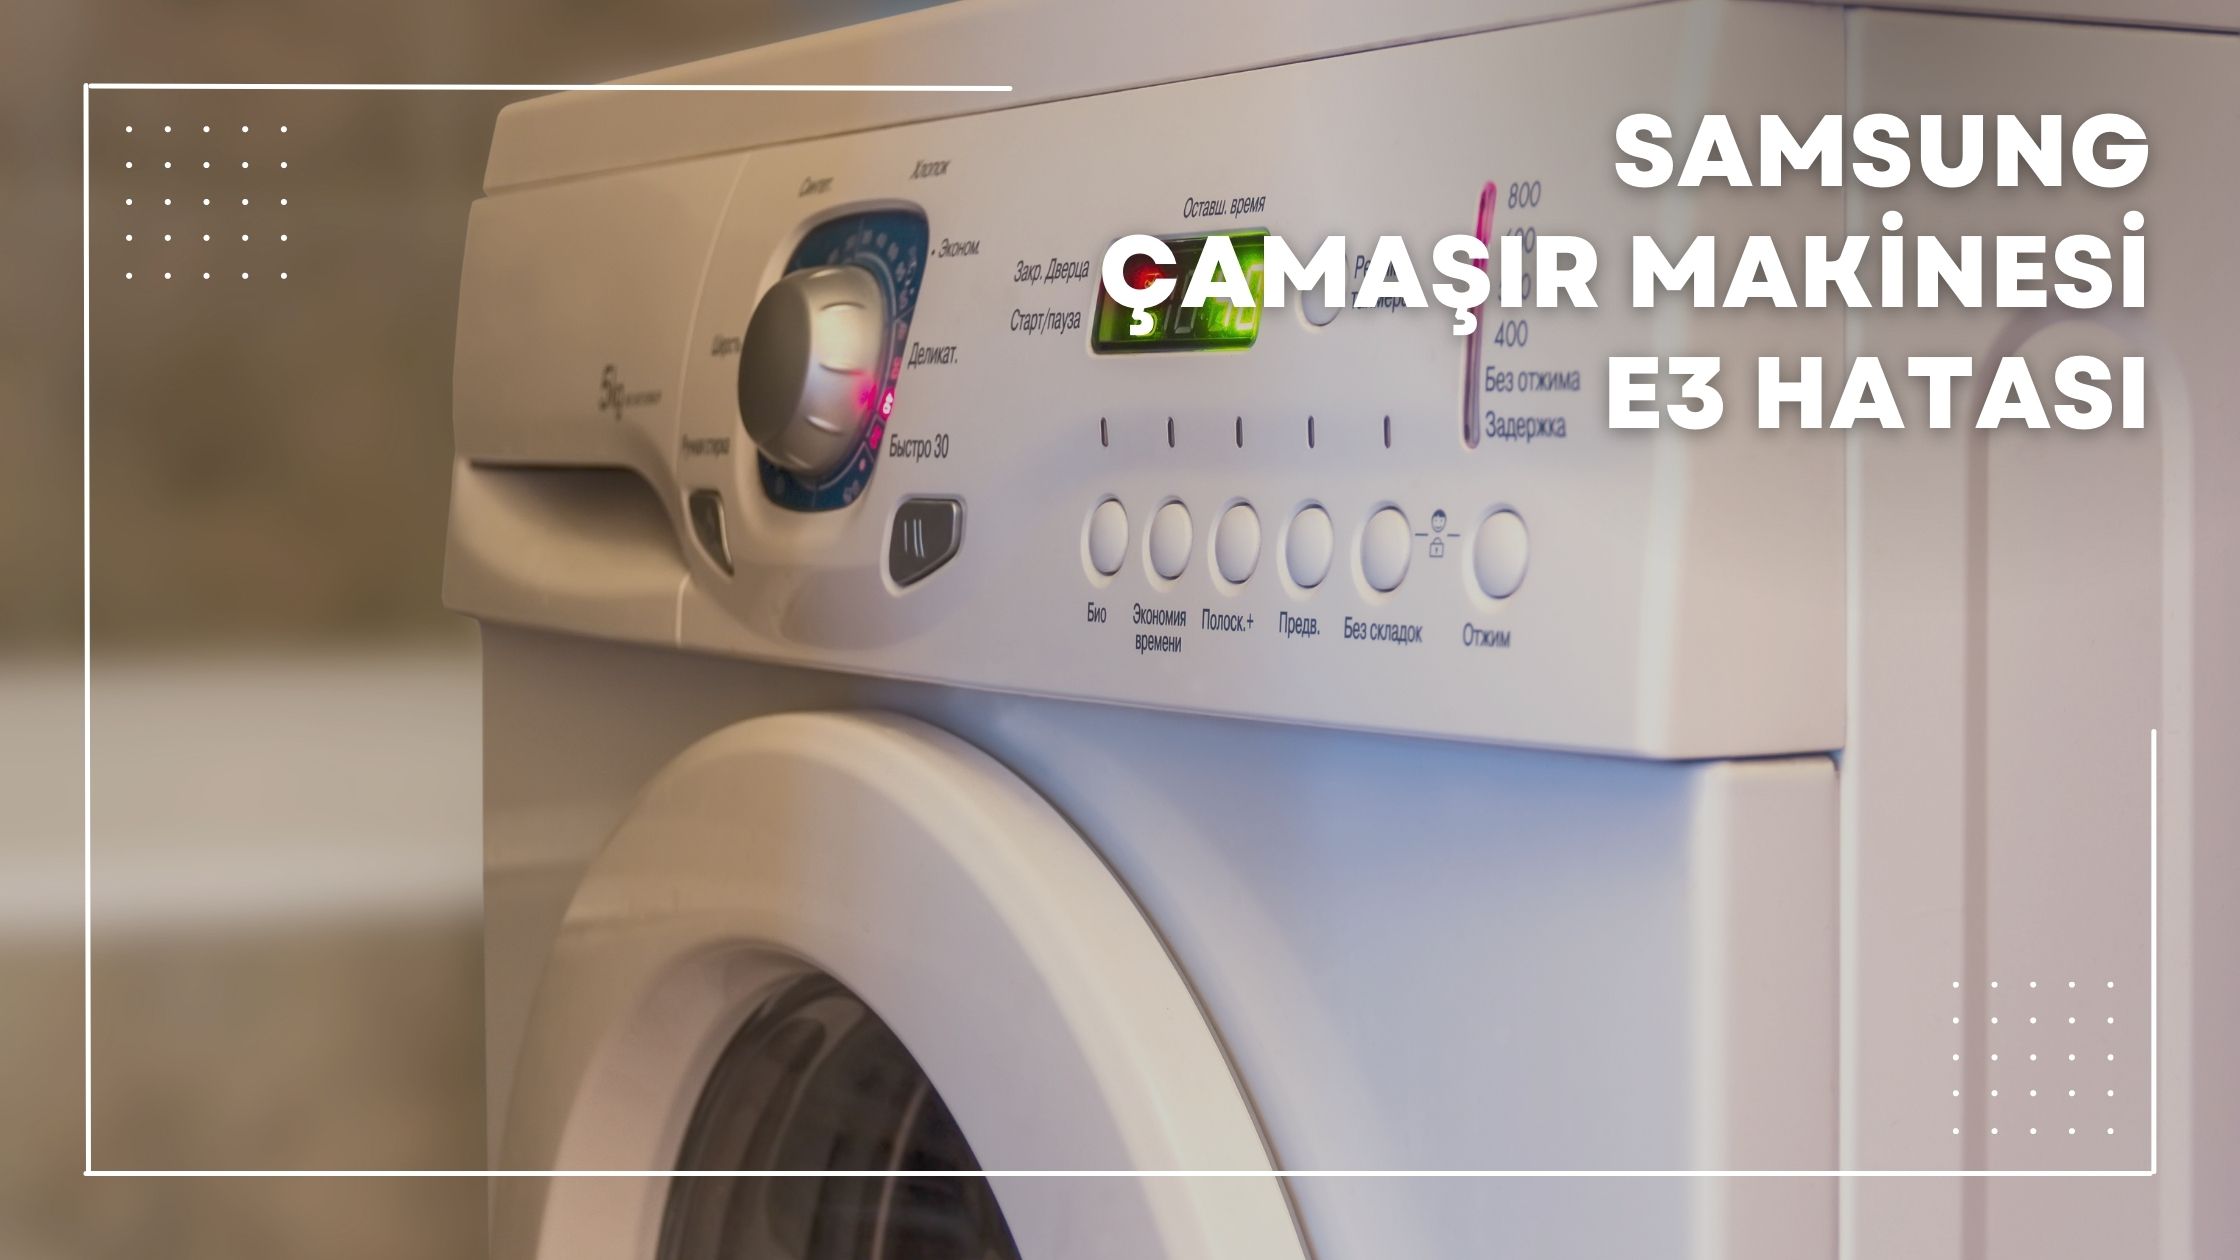 Samsung Çamaşır Makinesi 3e Hatası